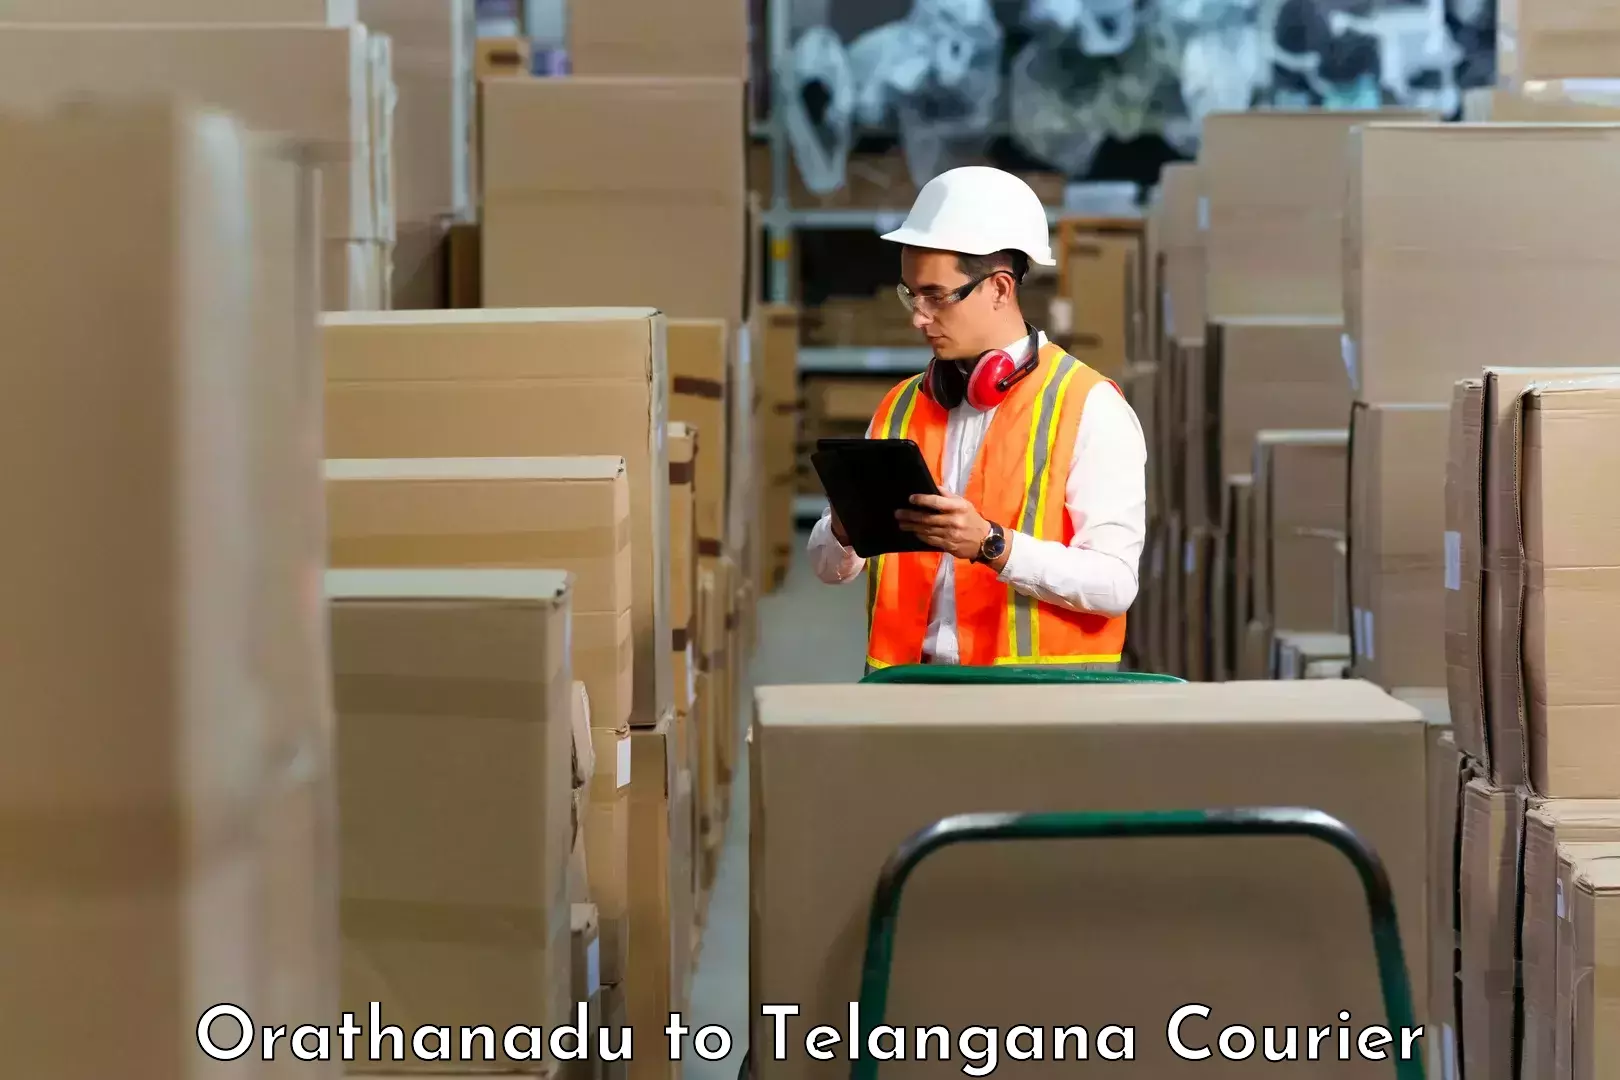 Cargo courier service Orathanadu to Achampet